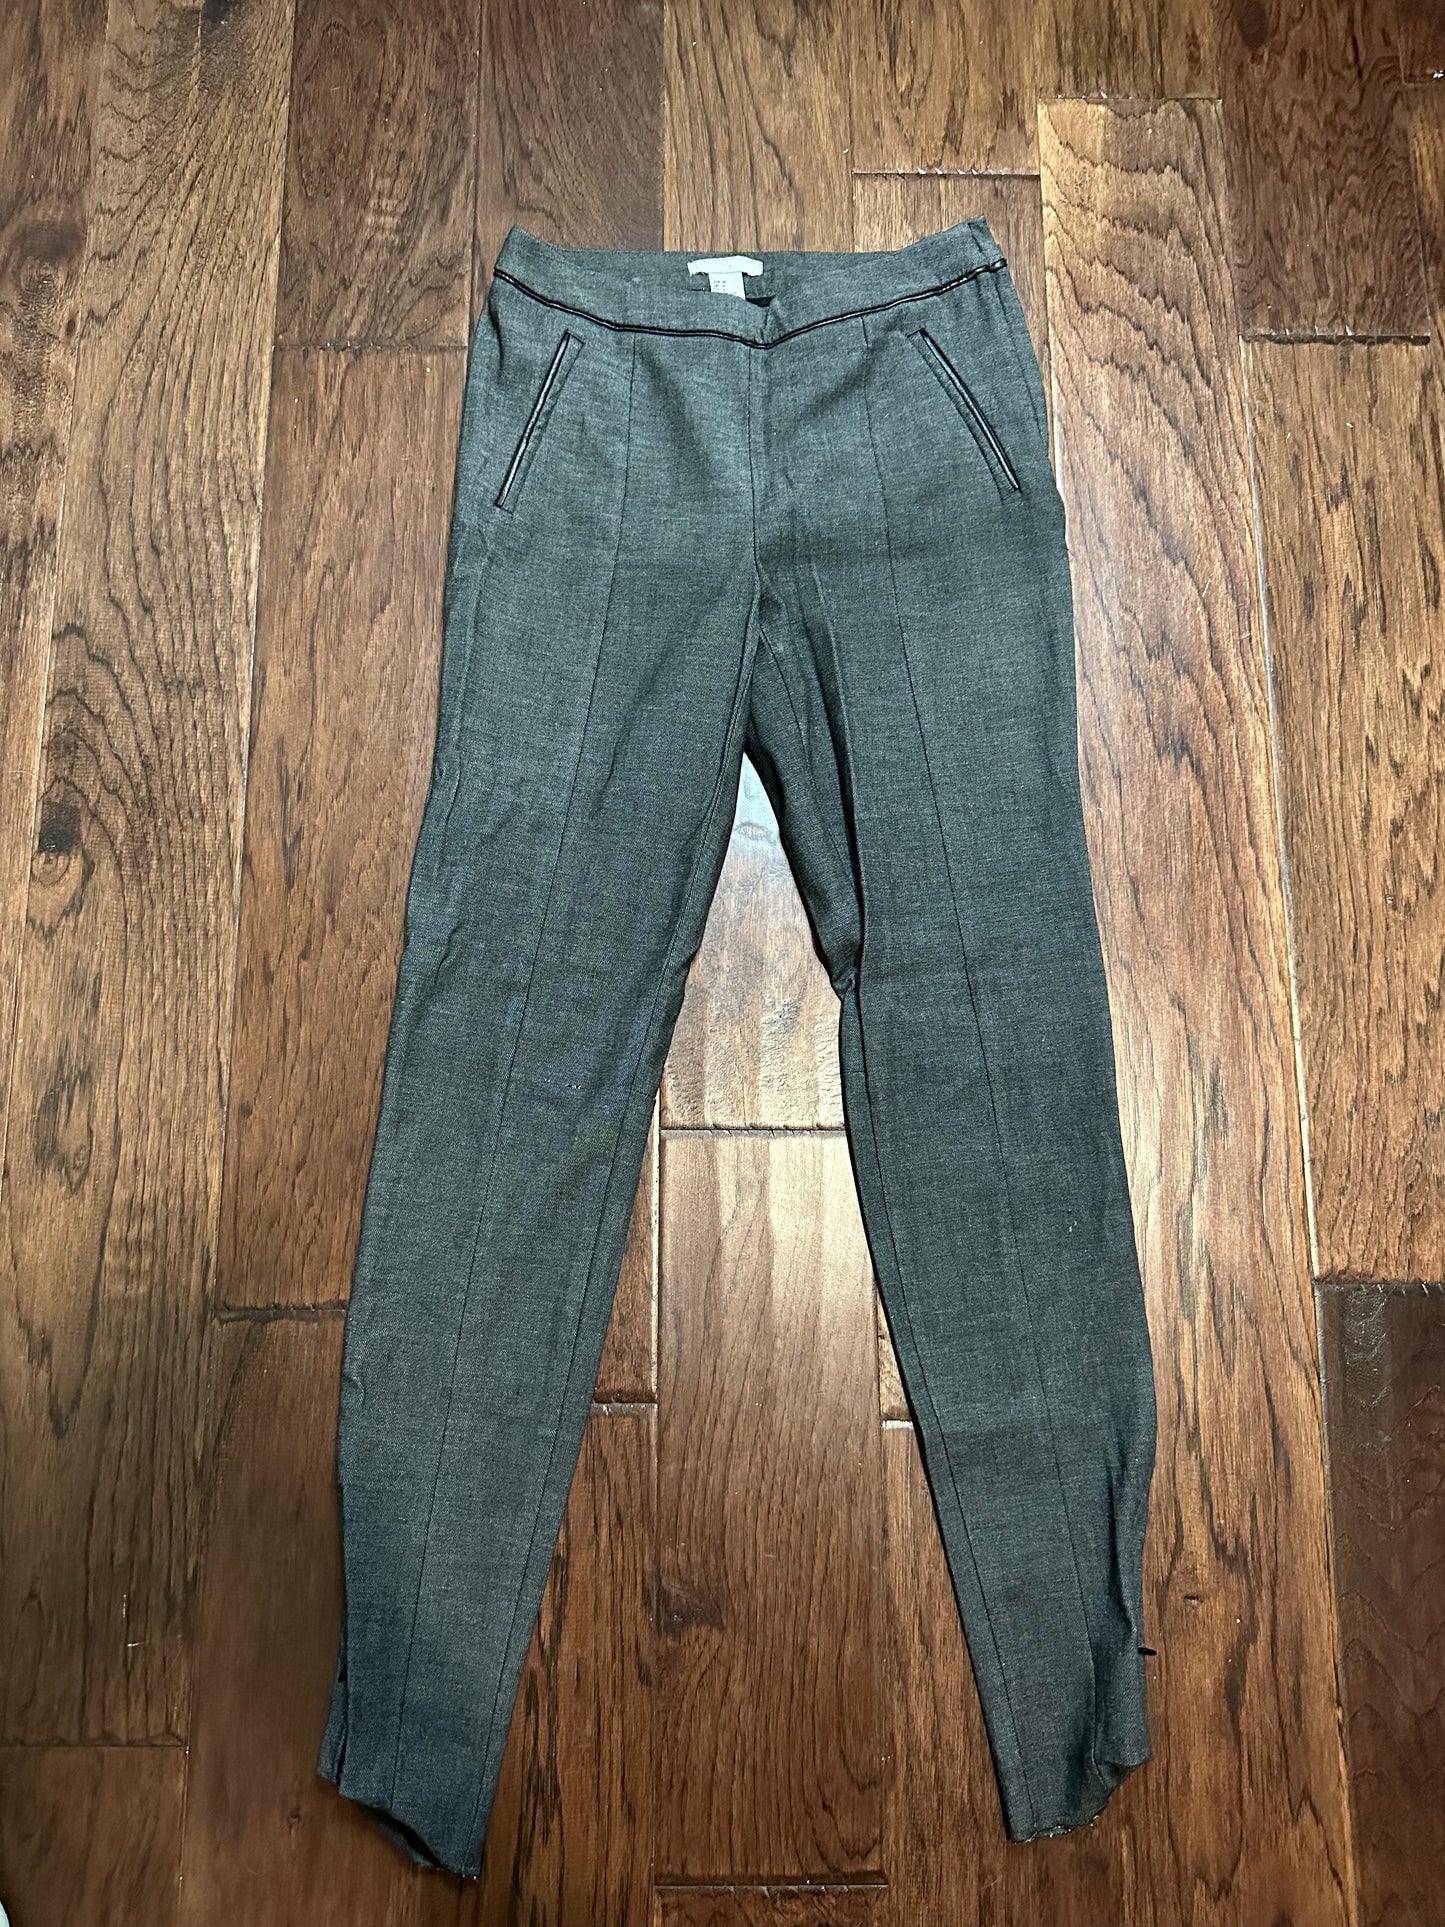 H&M Grey dress pants - size 4